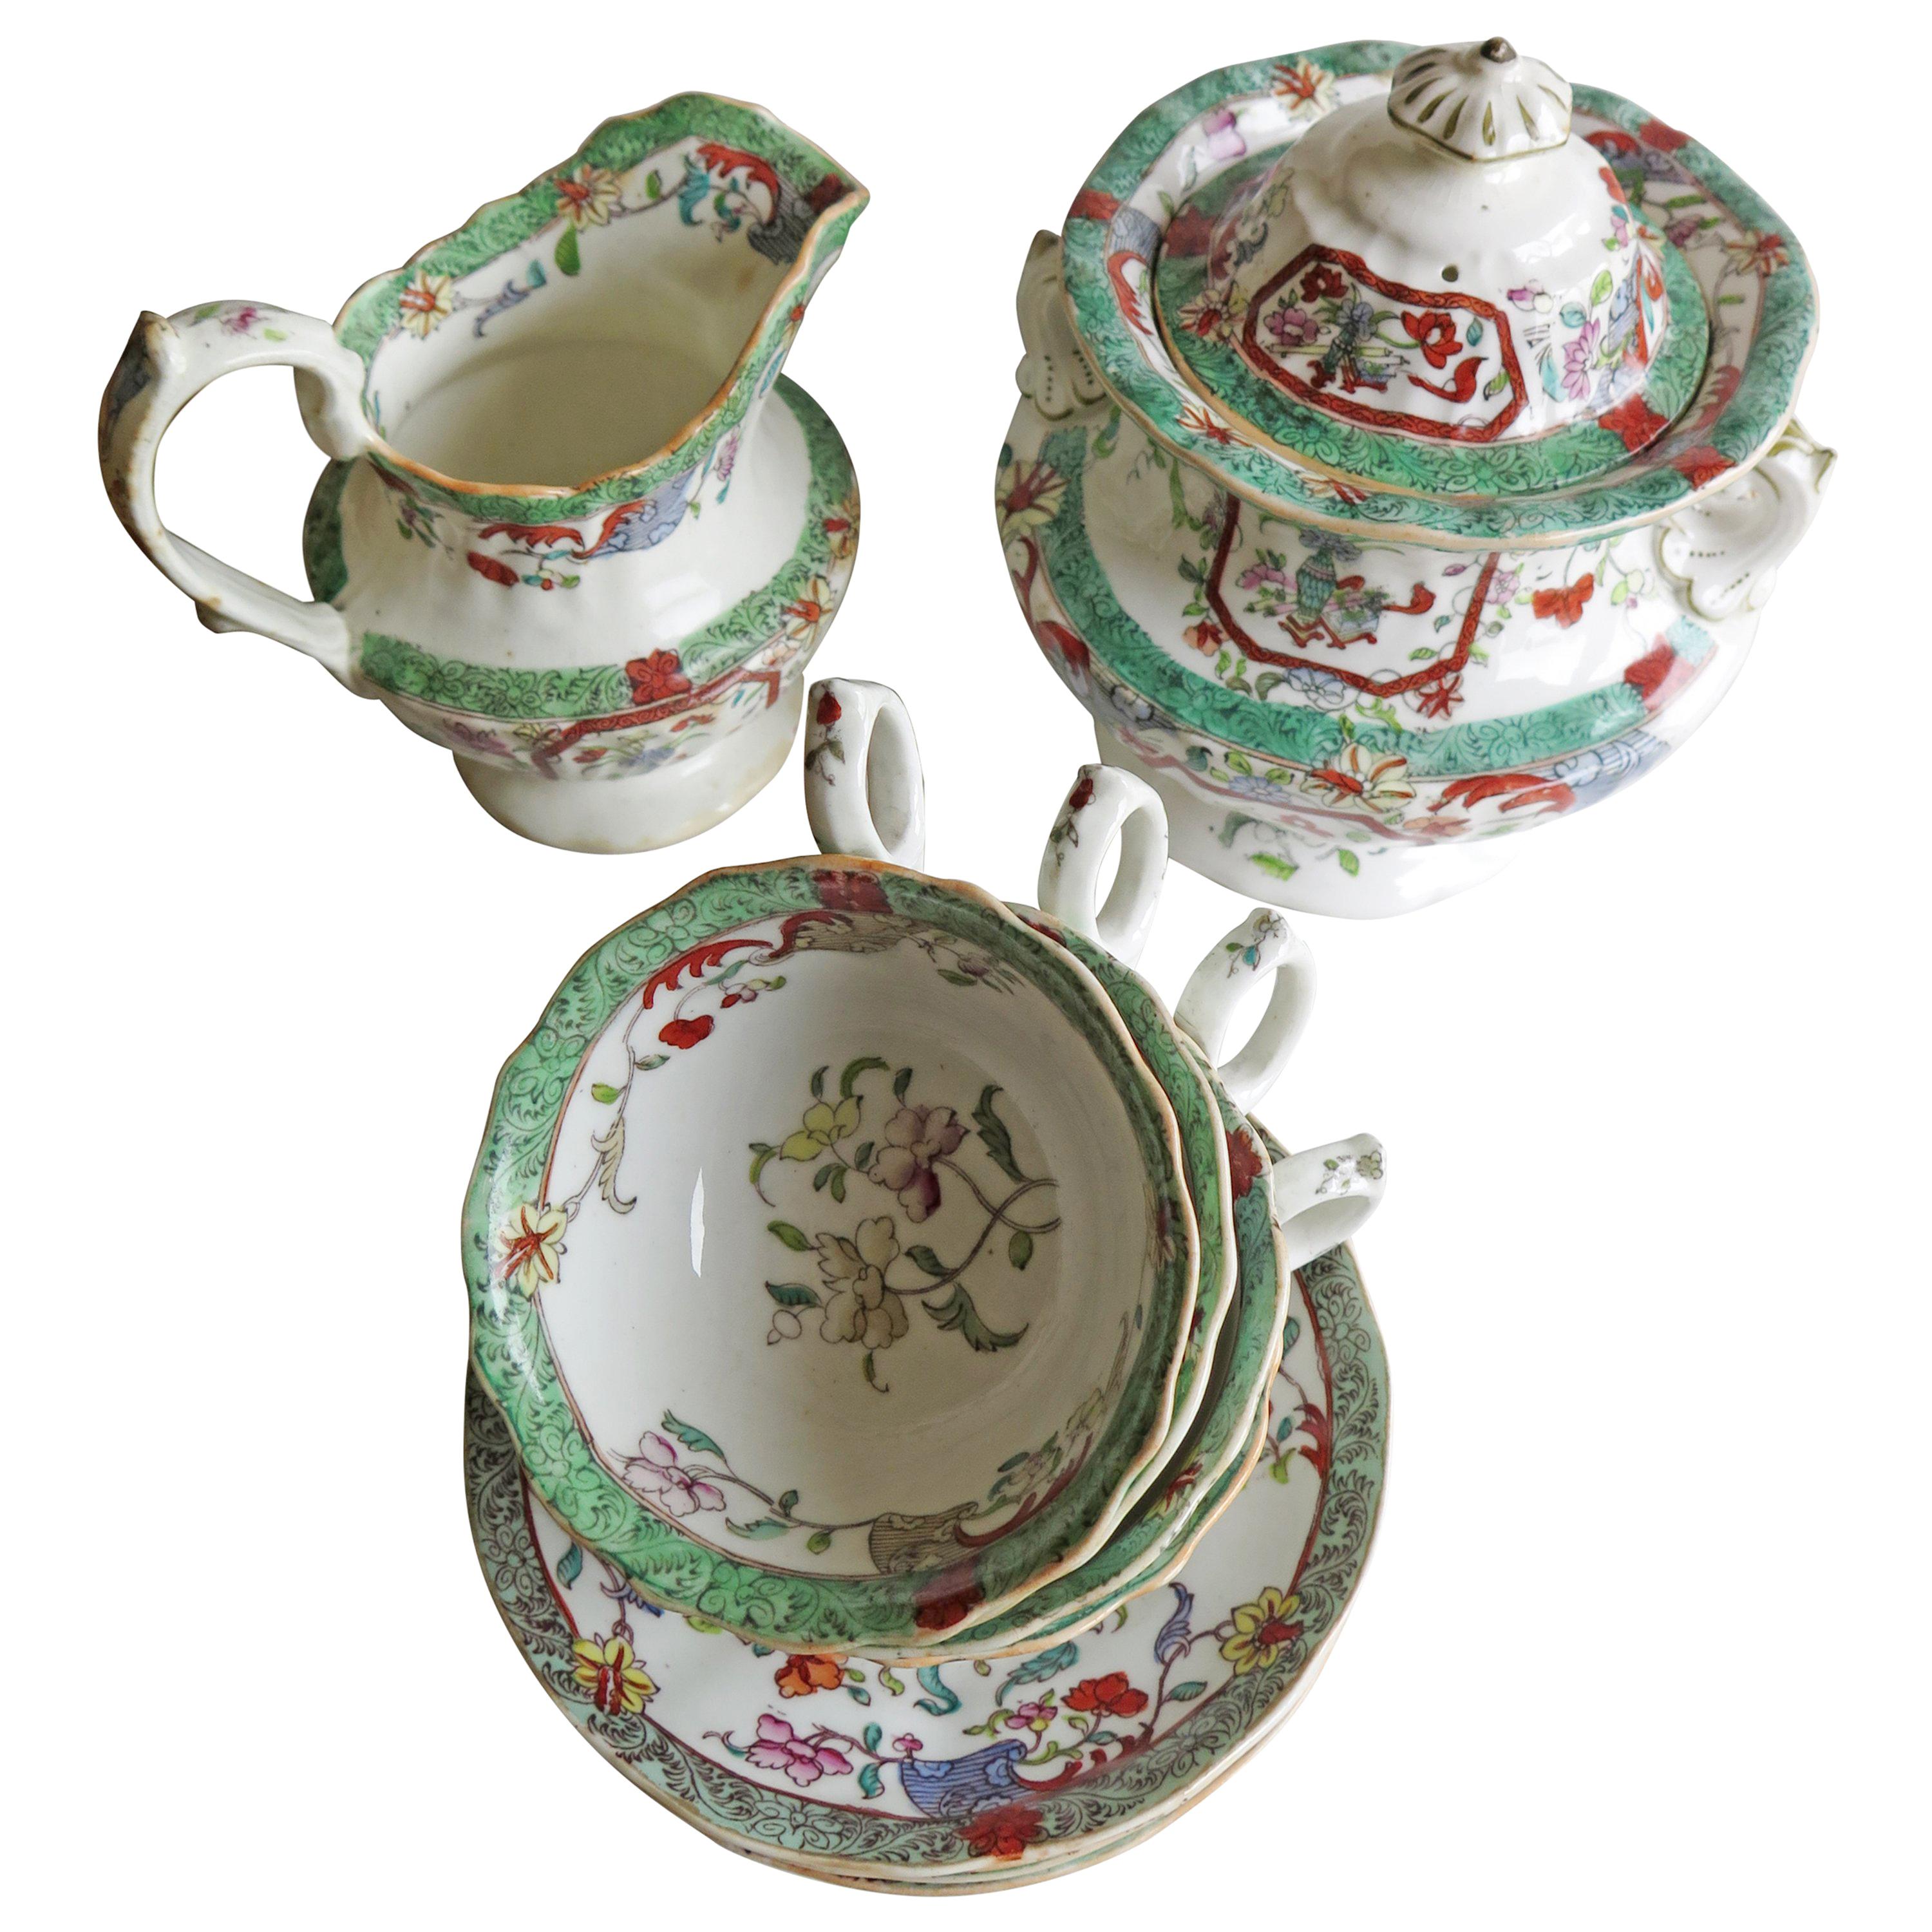 Il s'agit d'un service à thé en porcelaine anglaise, fabriqué par C. J. Mason (la même usine qui produisait la pierre de fer Mason's) à l'époque de Guillaume IV, vers 1830-1835.

Le service à thé comprend dix pièces ;
un grand sucrier à couvercle ou